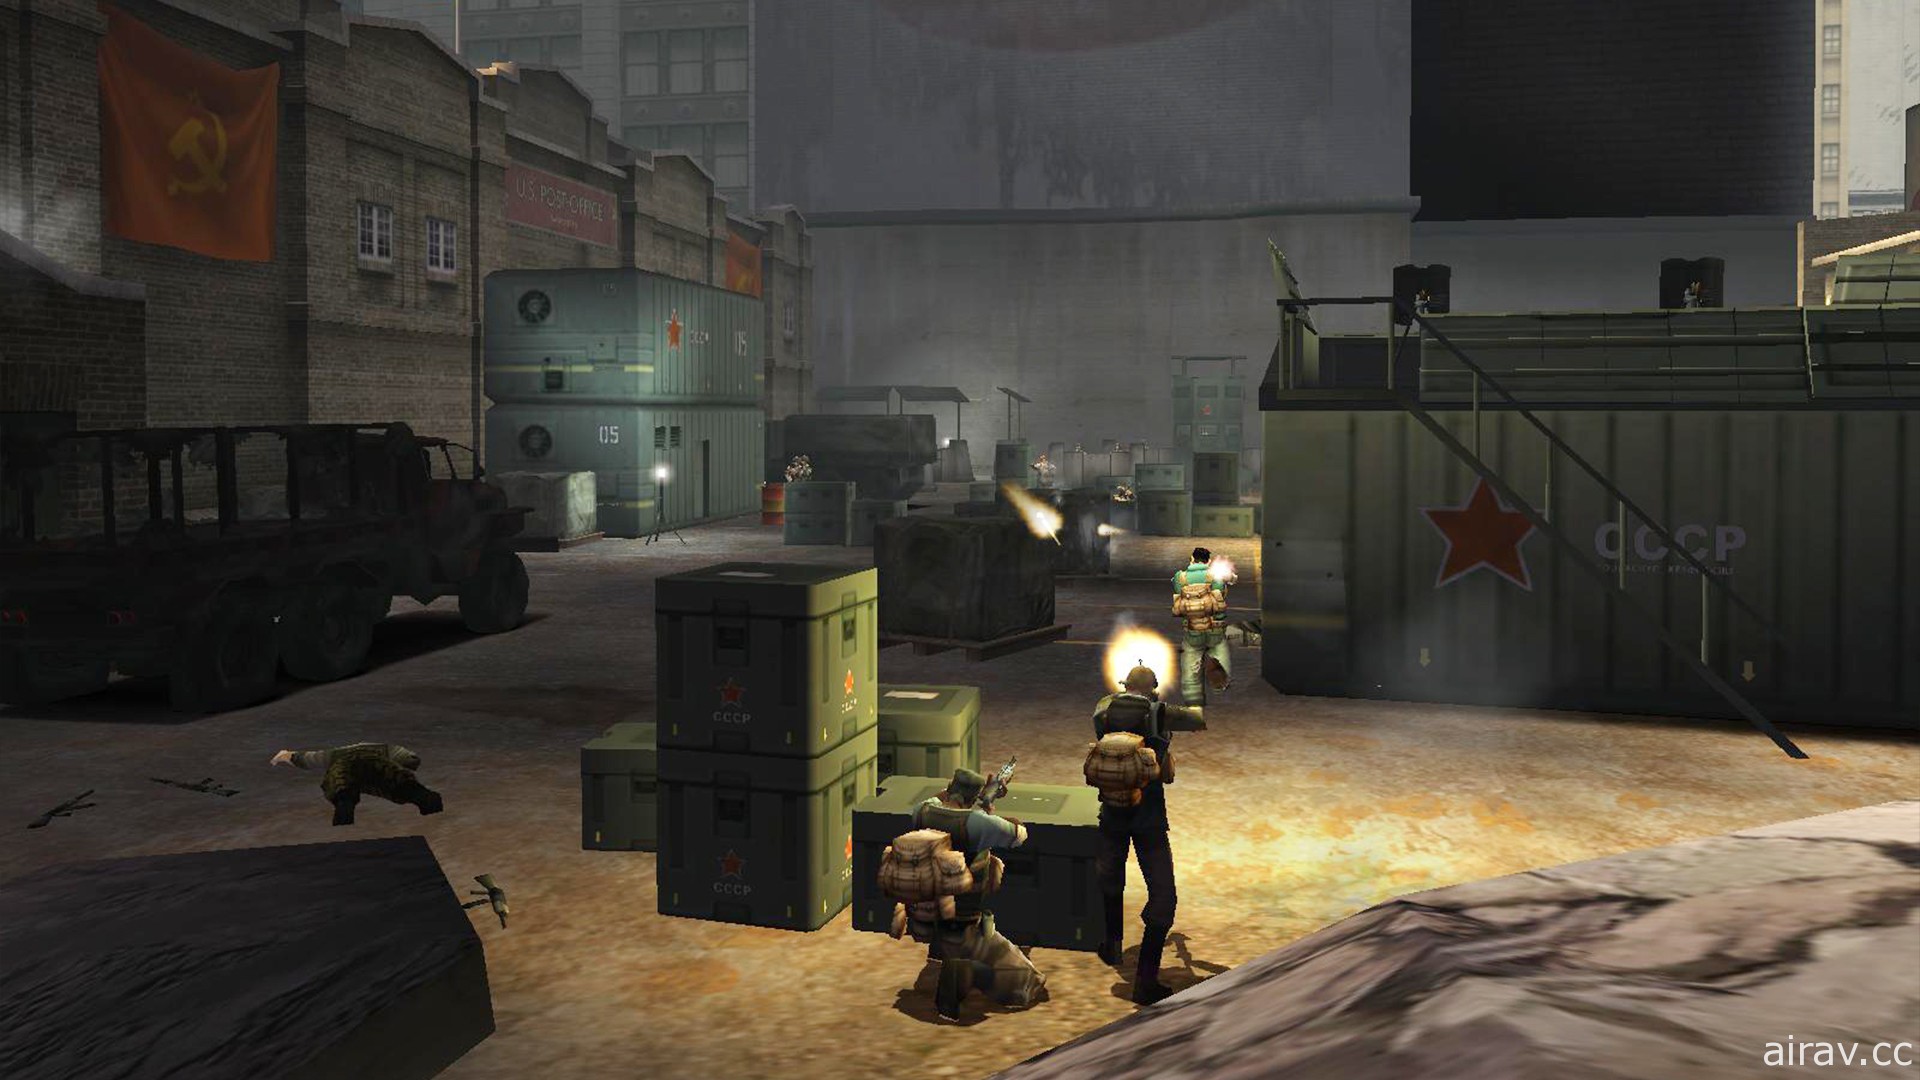 知名射擊遊戲《自由戰士 Freedom Fighters》相隔 17 年以 PC 數位版形式再度登場